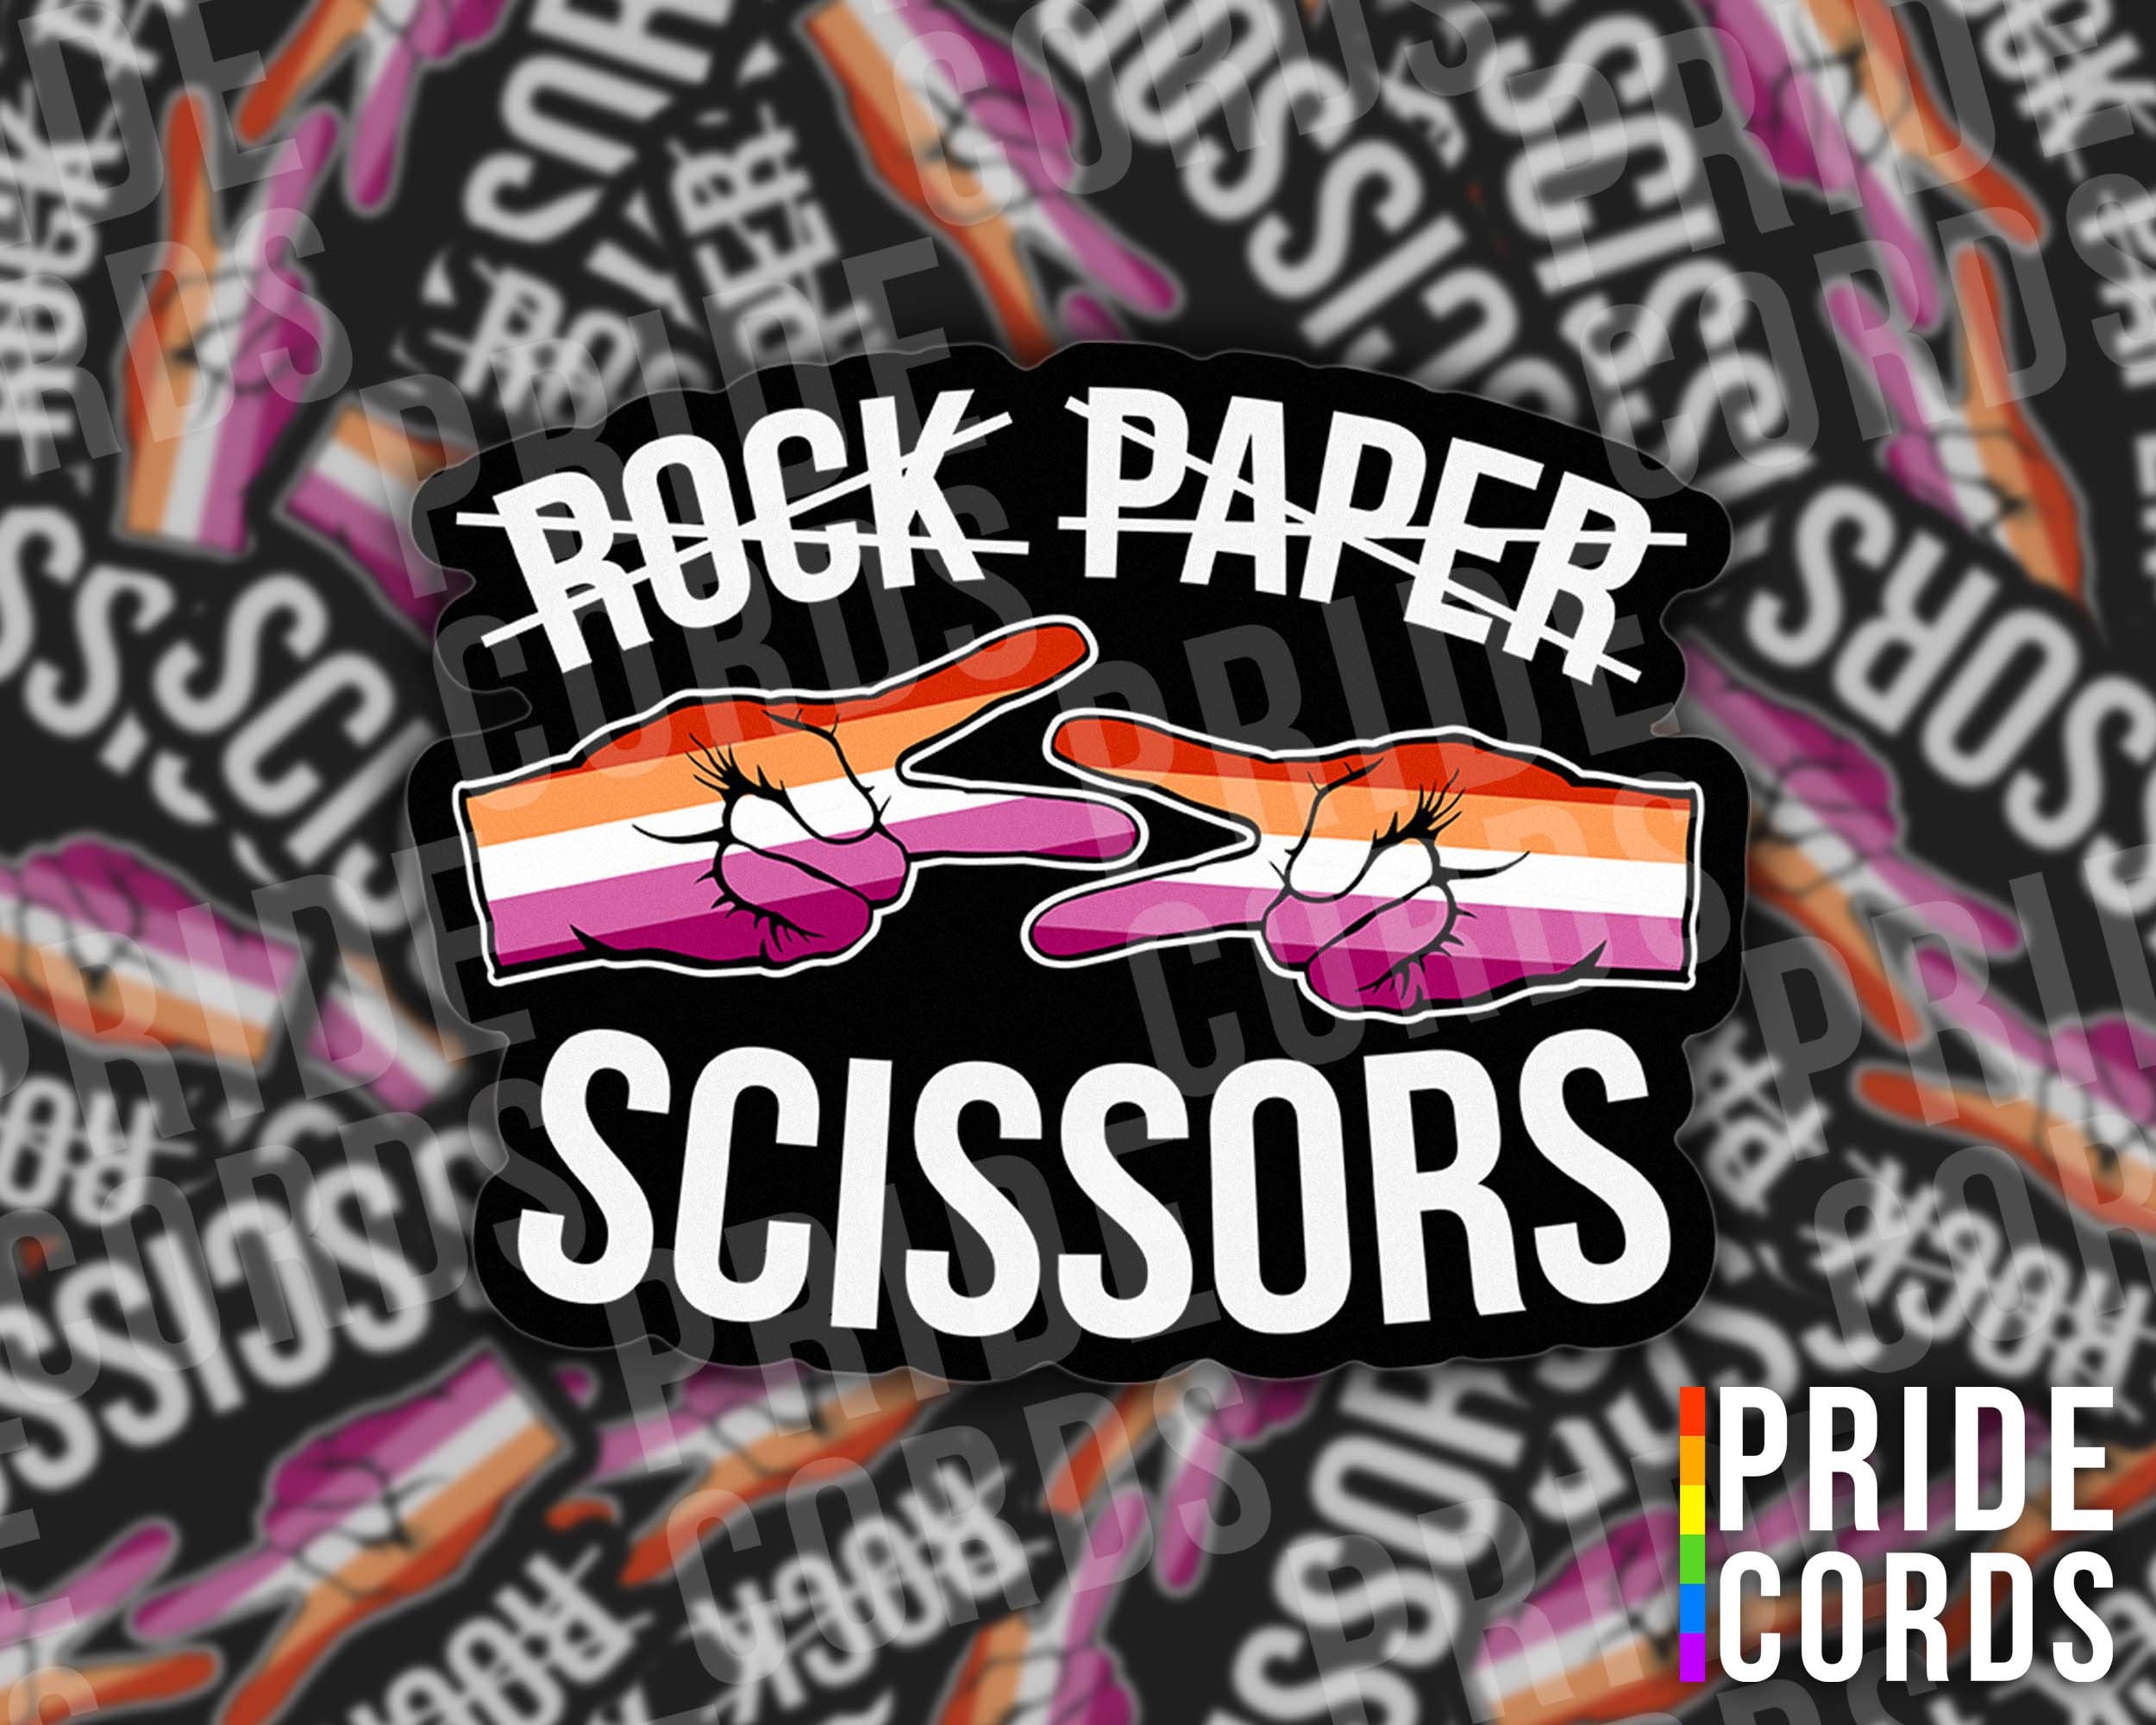 Bird Scissors Sticker for Sale by DigitalRedesign